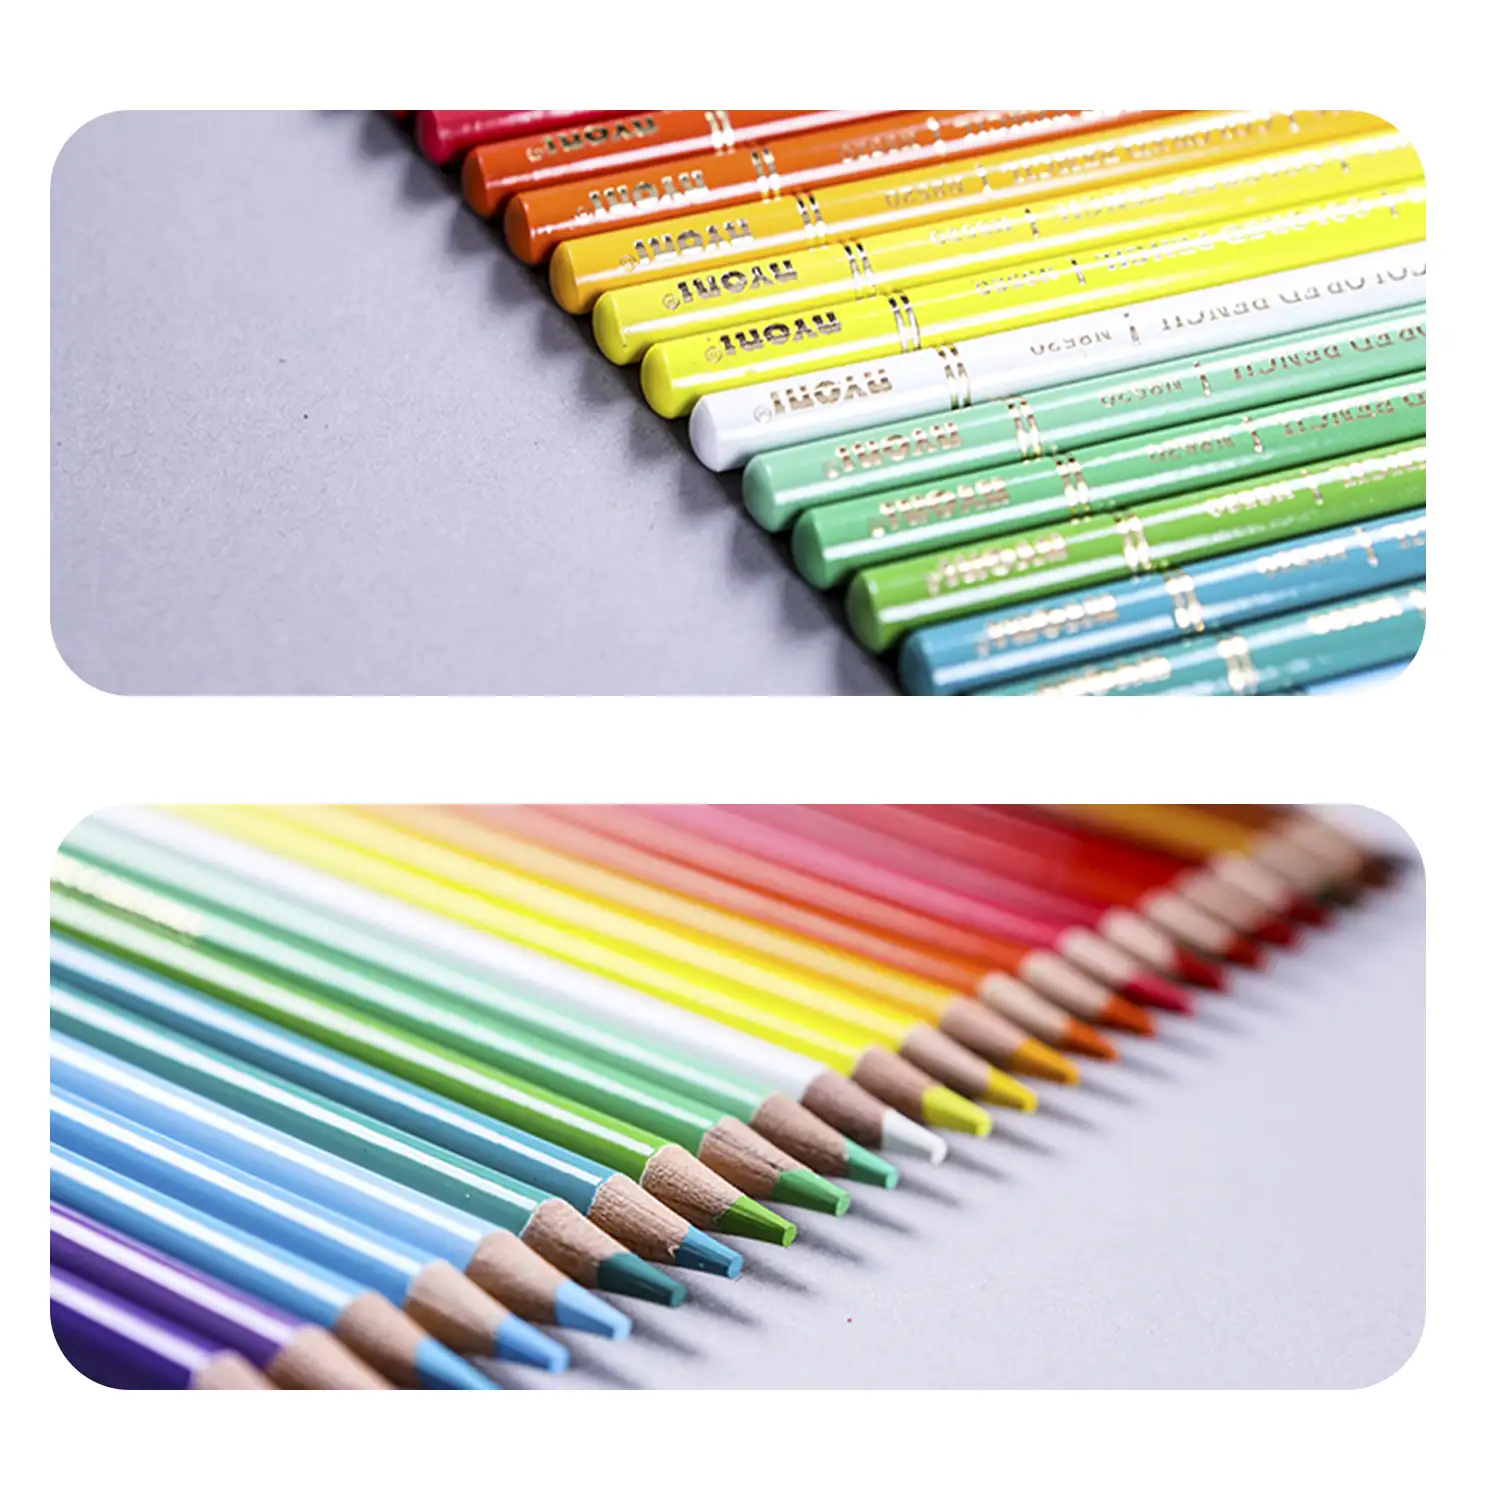 Set de 72 lápices de colores. Fabricados en madera, forma redonda profesional.